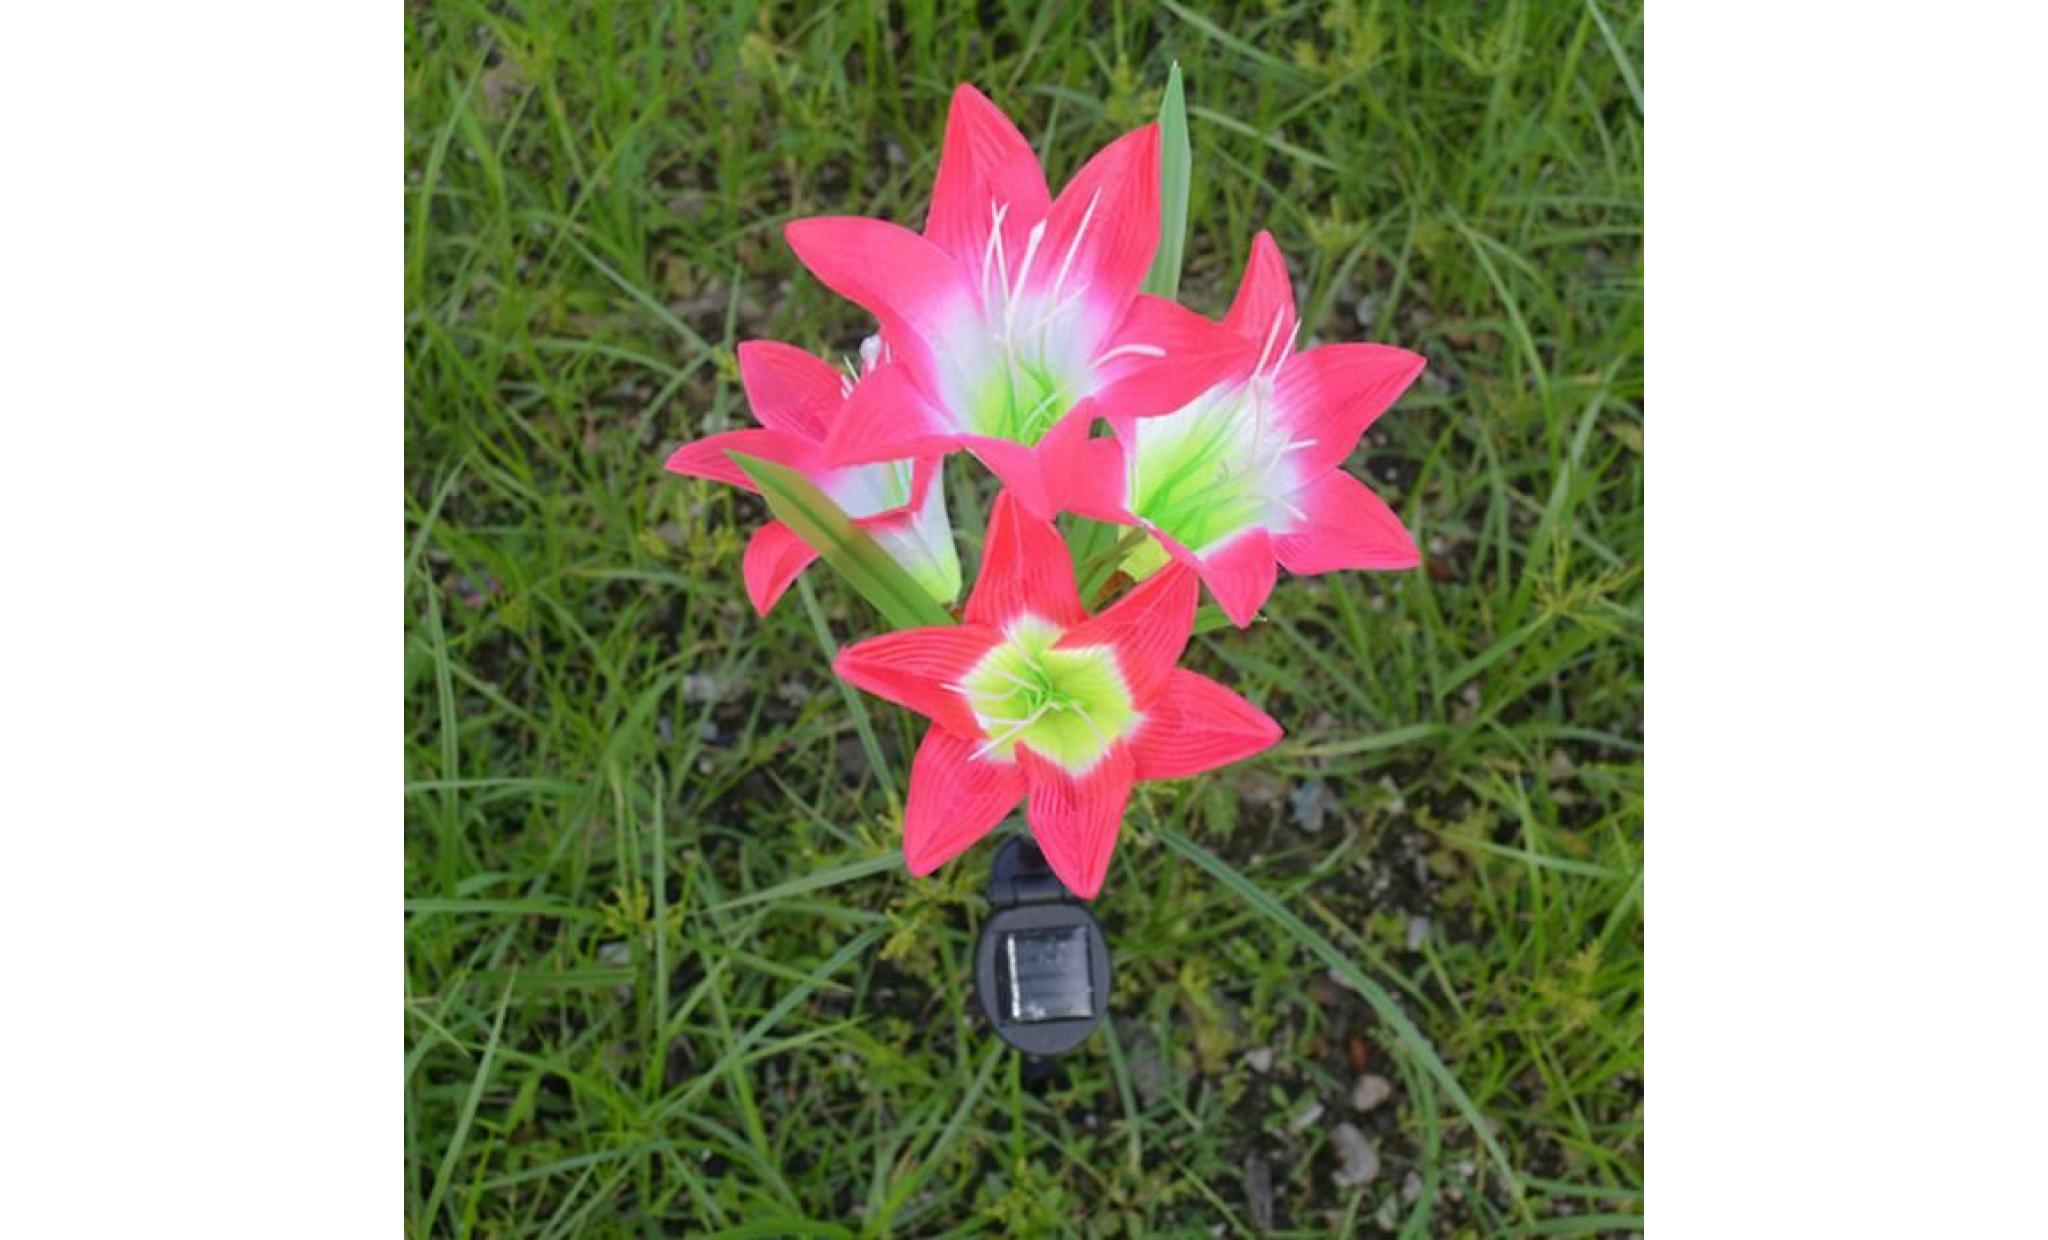 borne solaire 2 pcs fleur de lys jardin solaire actionné pieu lumières lumières fleurs artificielles led lumière #pa 130 pas cher